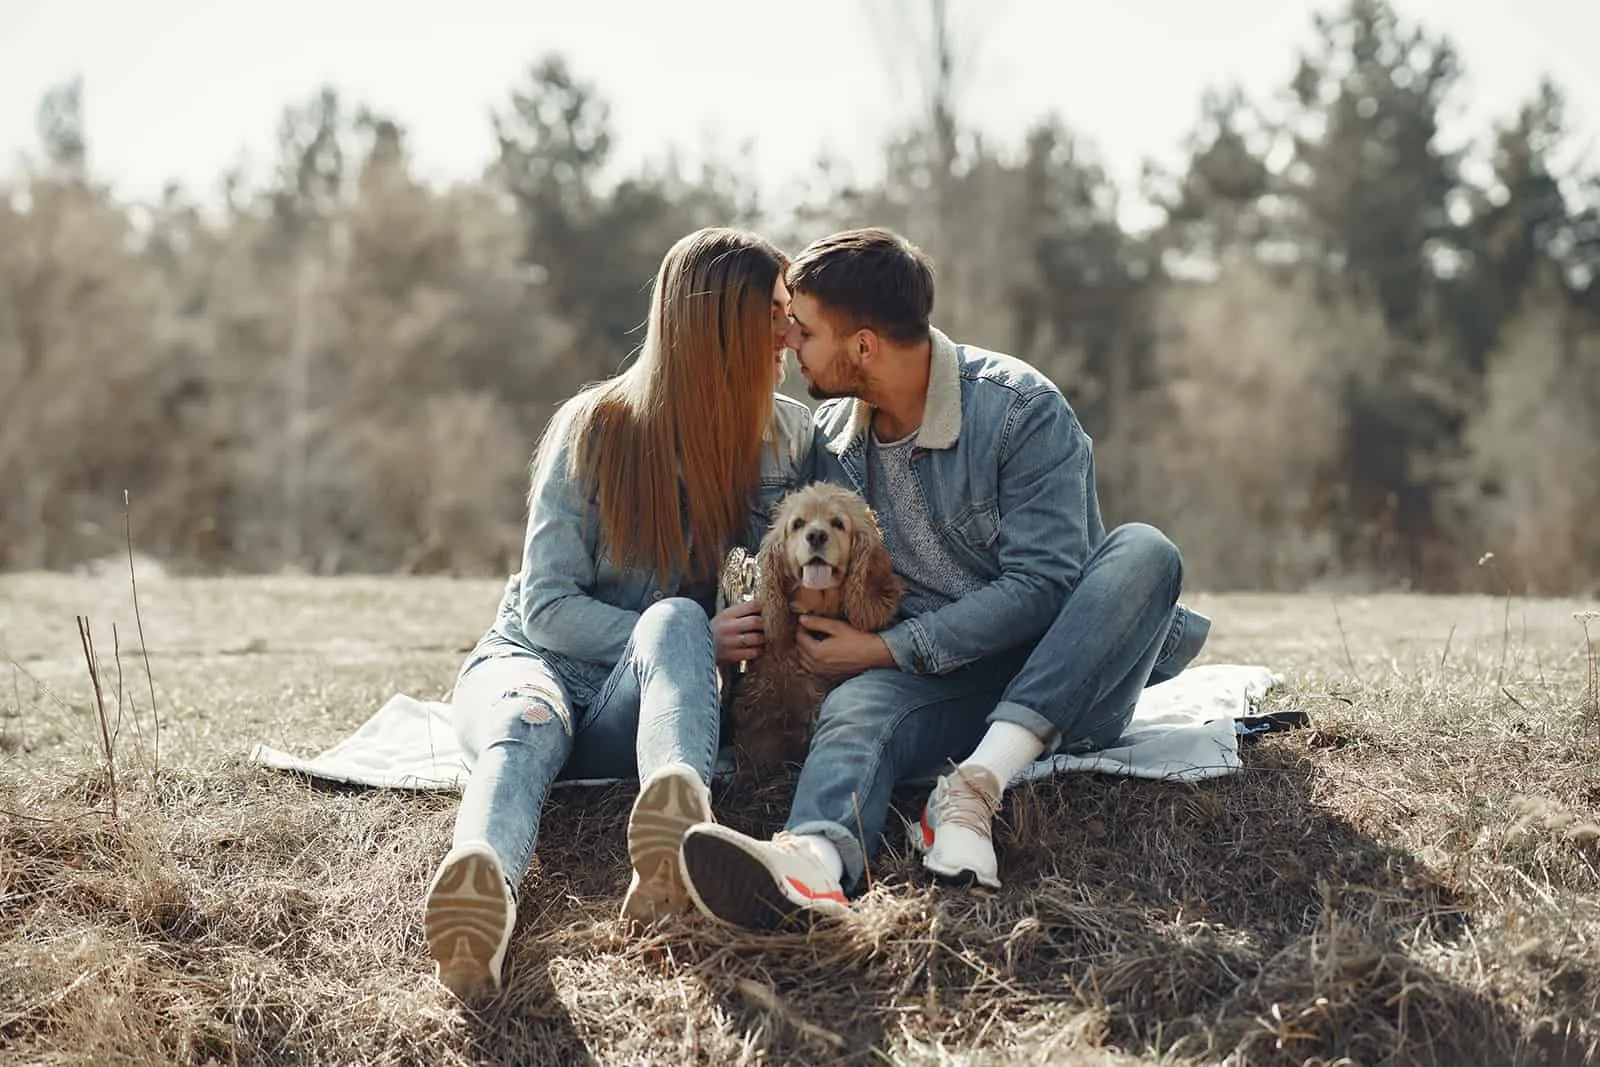 Ein liebevolles Paar, das sich gerade küssen will und mit einem Hund zwischen ihnen auf dem Rasen sitzt